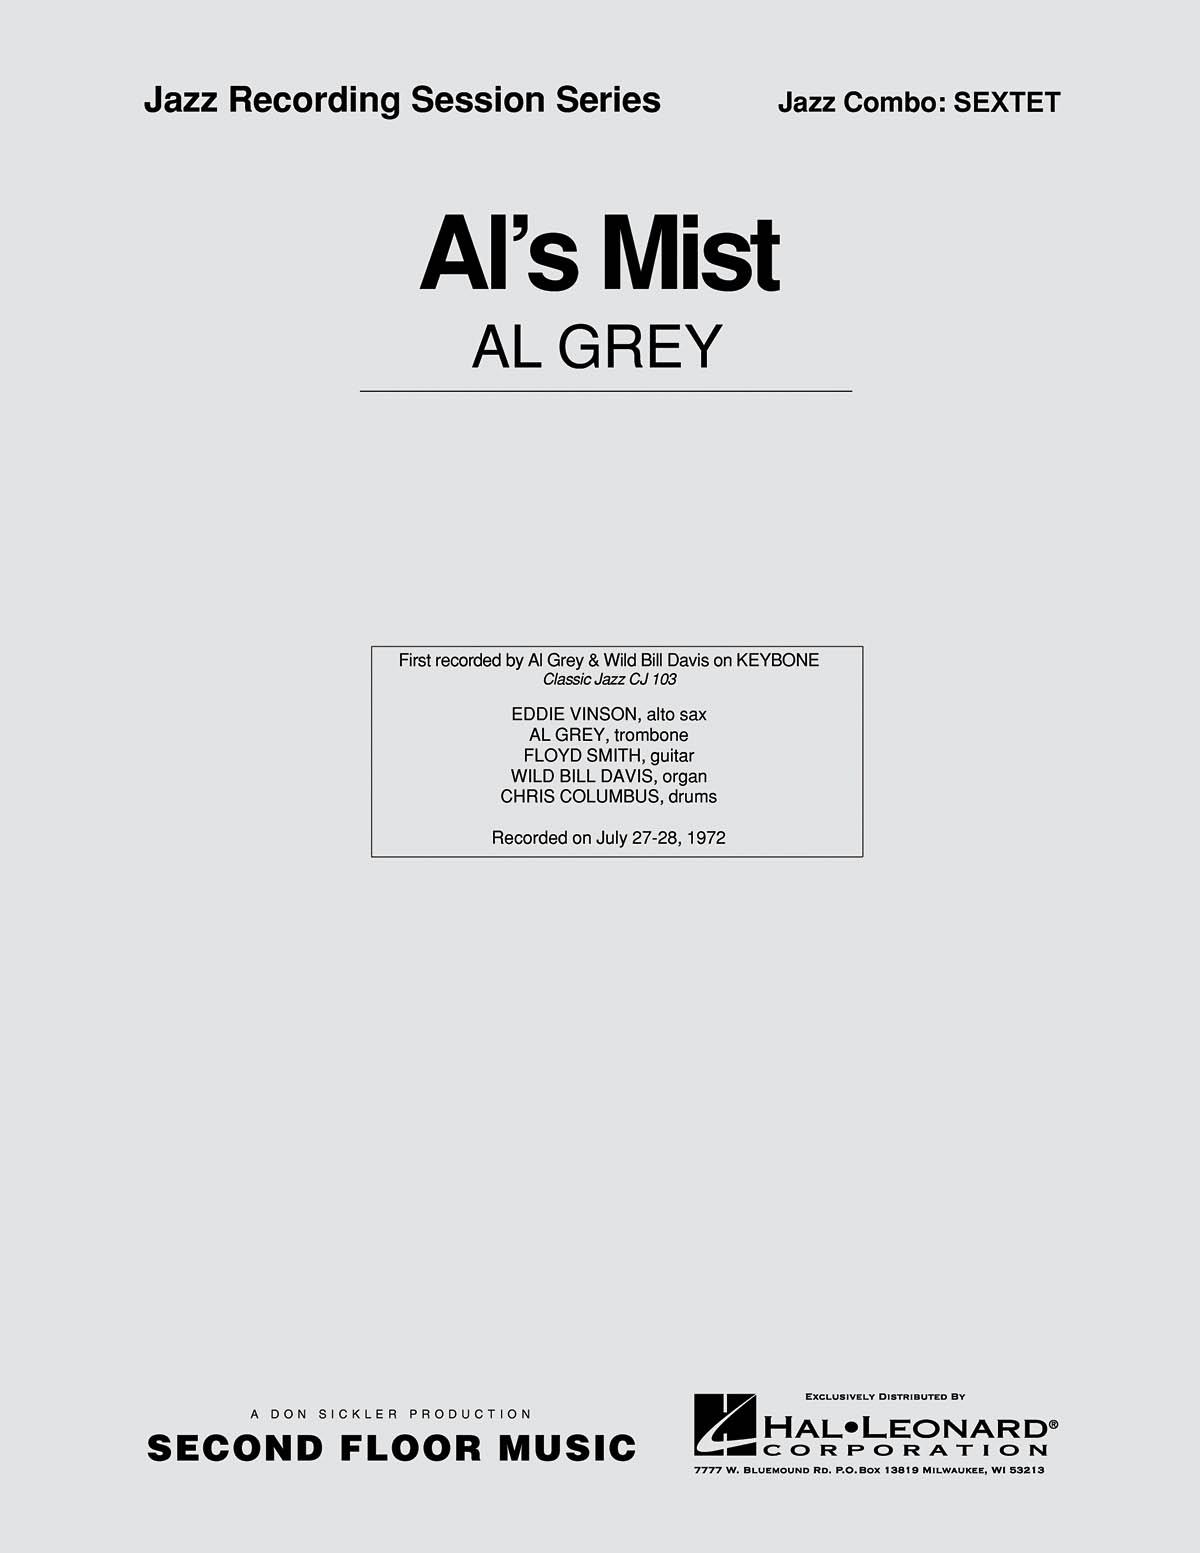 Al’s Mist